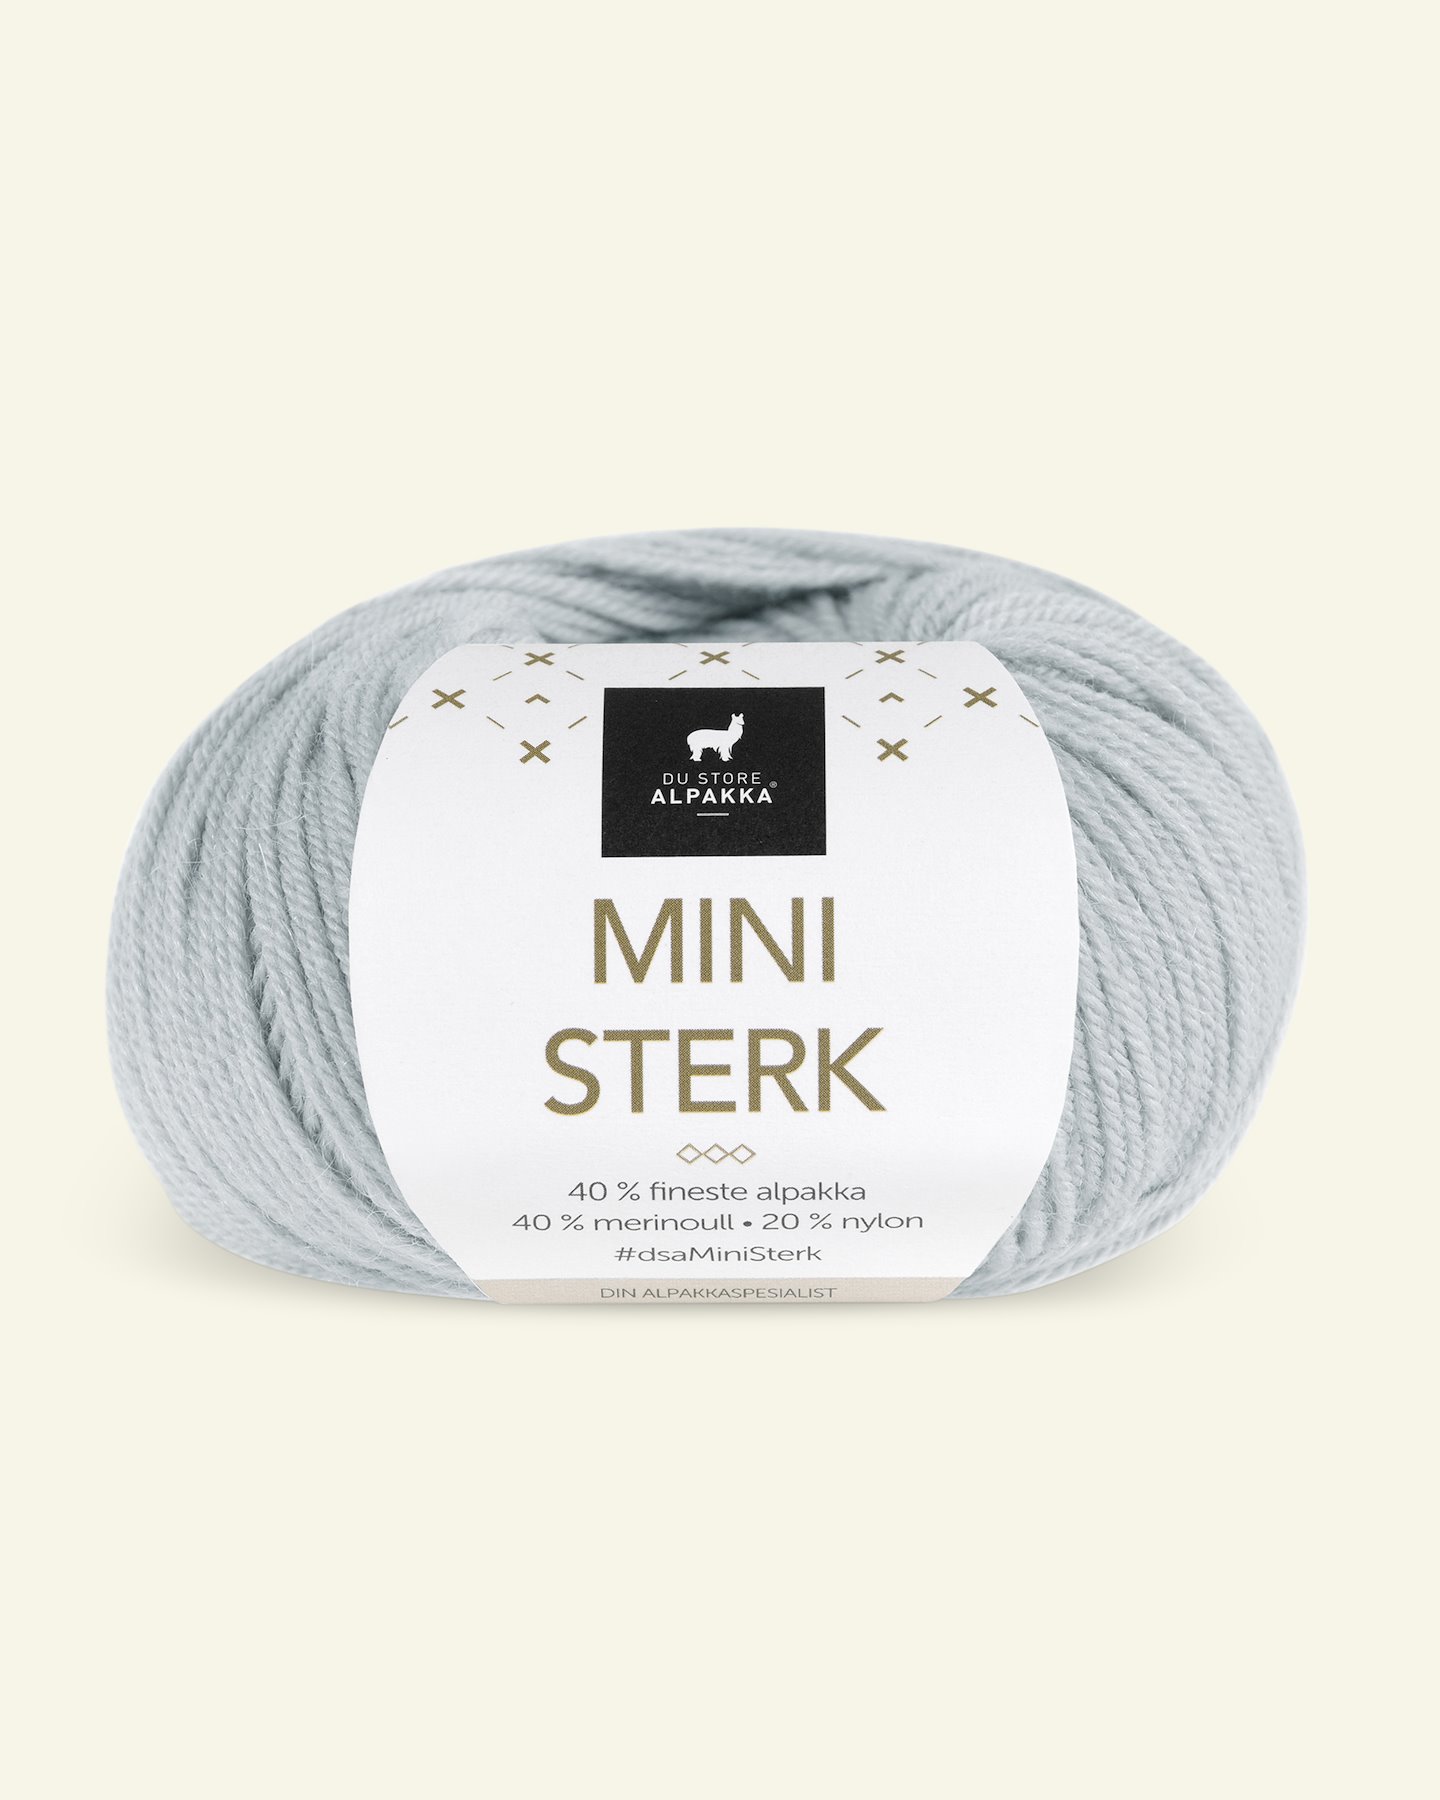 Du Store Alpakka, alpaca merino blandingsgarn "Mini Sterk", lys blå (848) 90000634_pack